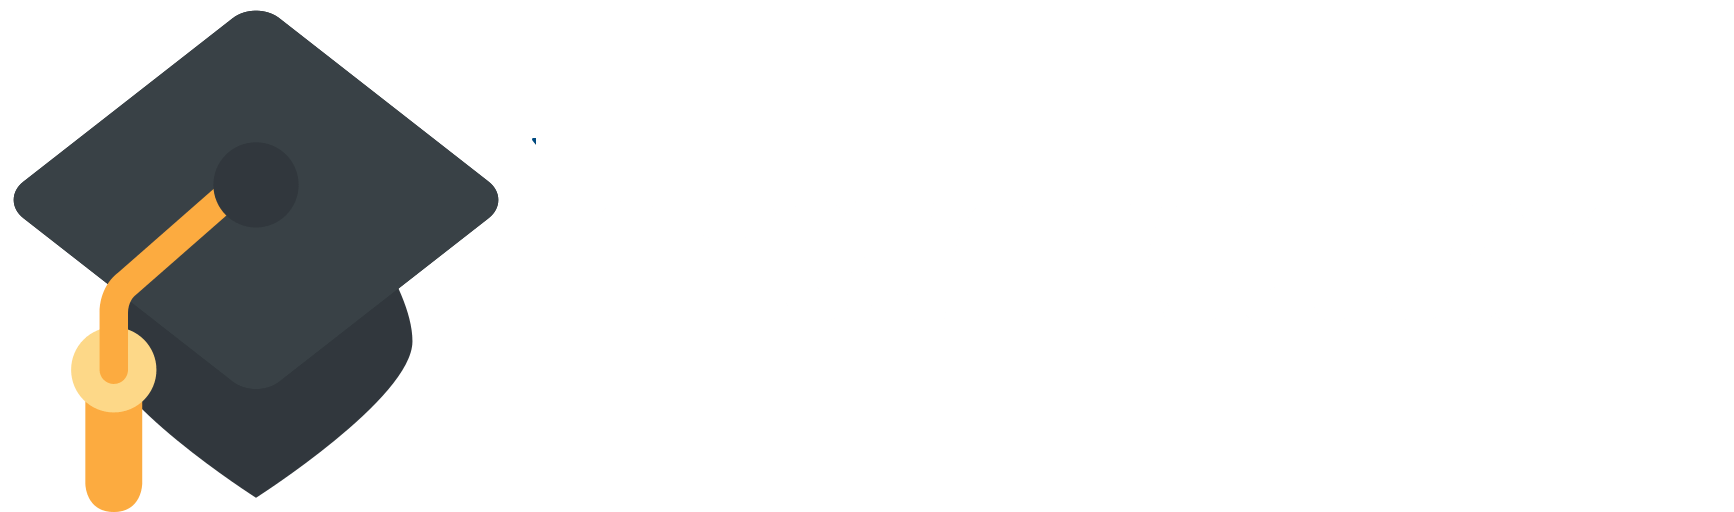 Homework Educator